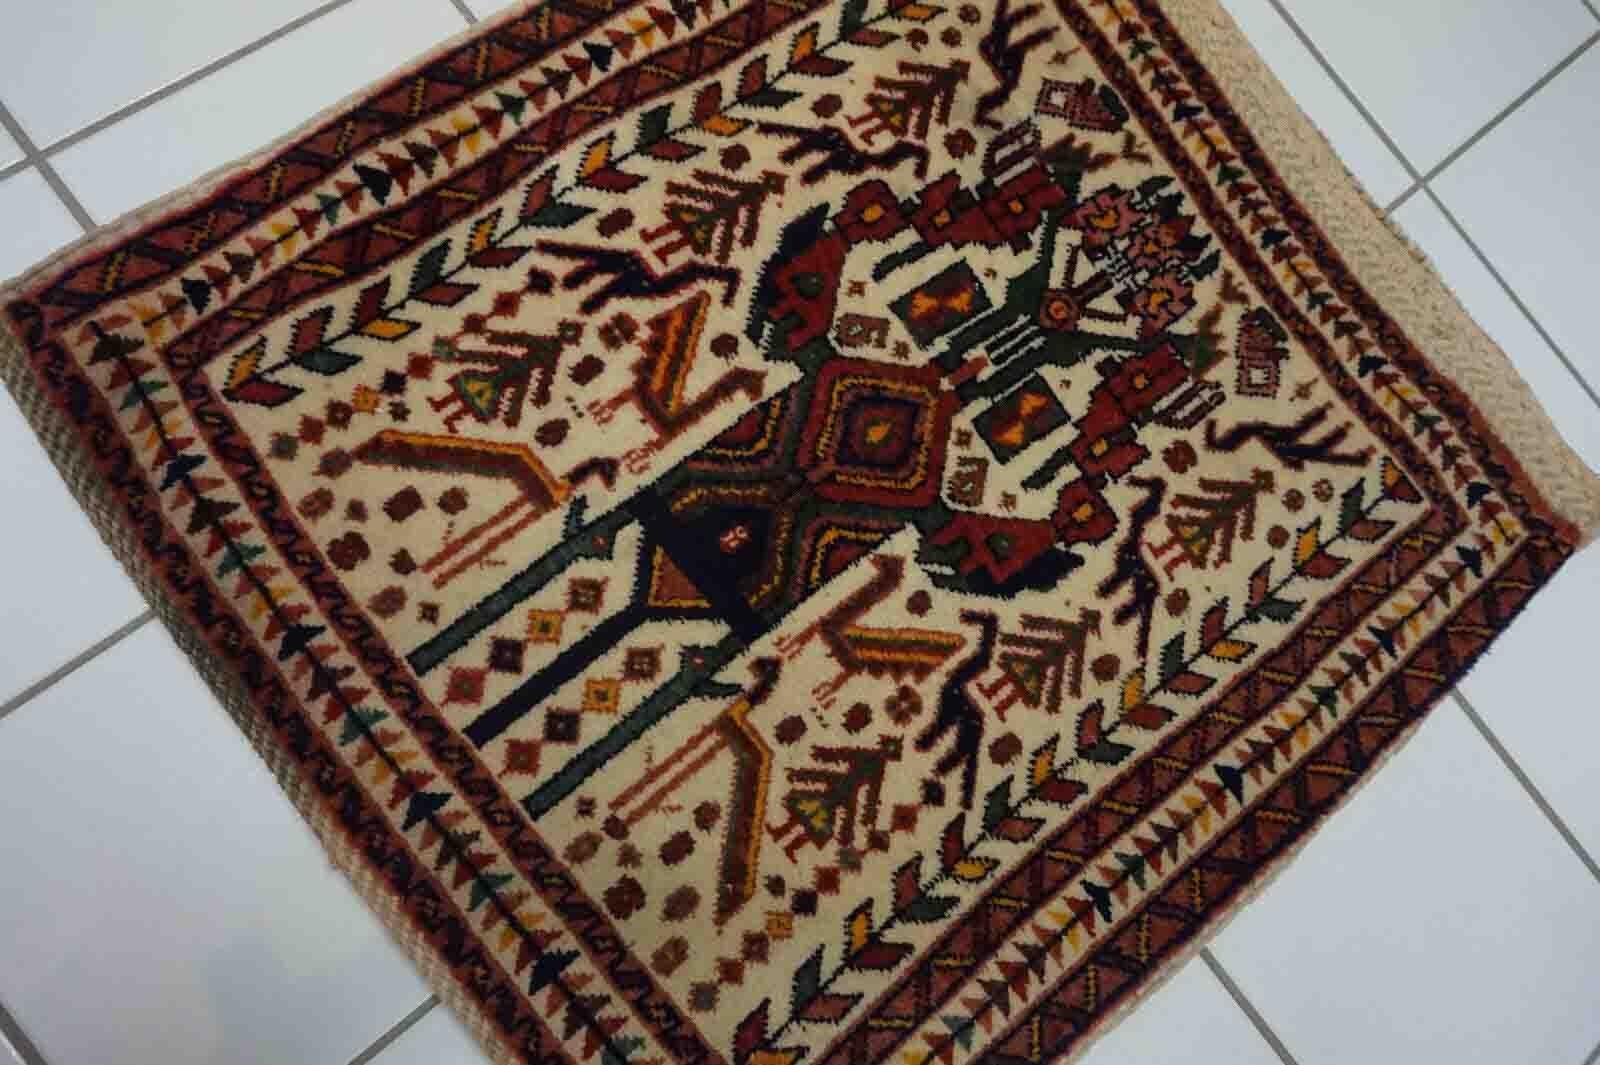 Handgefertigte Vintage-Salztasche aus Afshar im Stammesdesign. Der Teppich stammt aus dem Ende des 20. Jahrhunderts und ist in gutem Originalzustand.

-Zustand: original gut,

-Umgebung: 1970er Jahre,

-Größe: 1,8' x 2' (57cm x 63cm),

-MATERIAL: